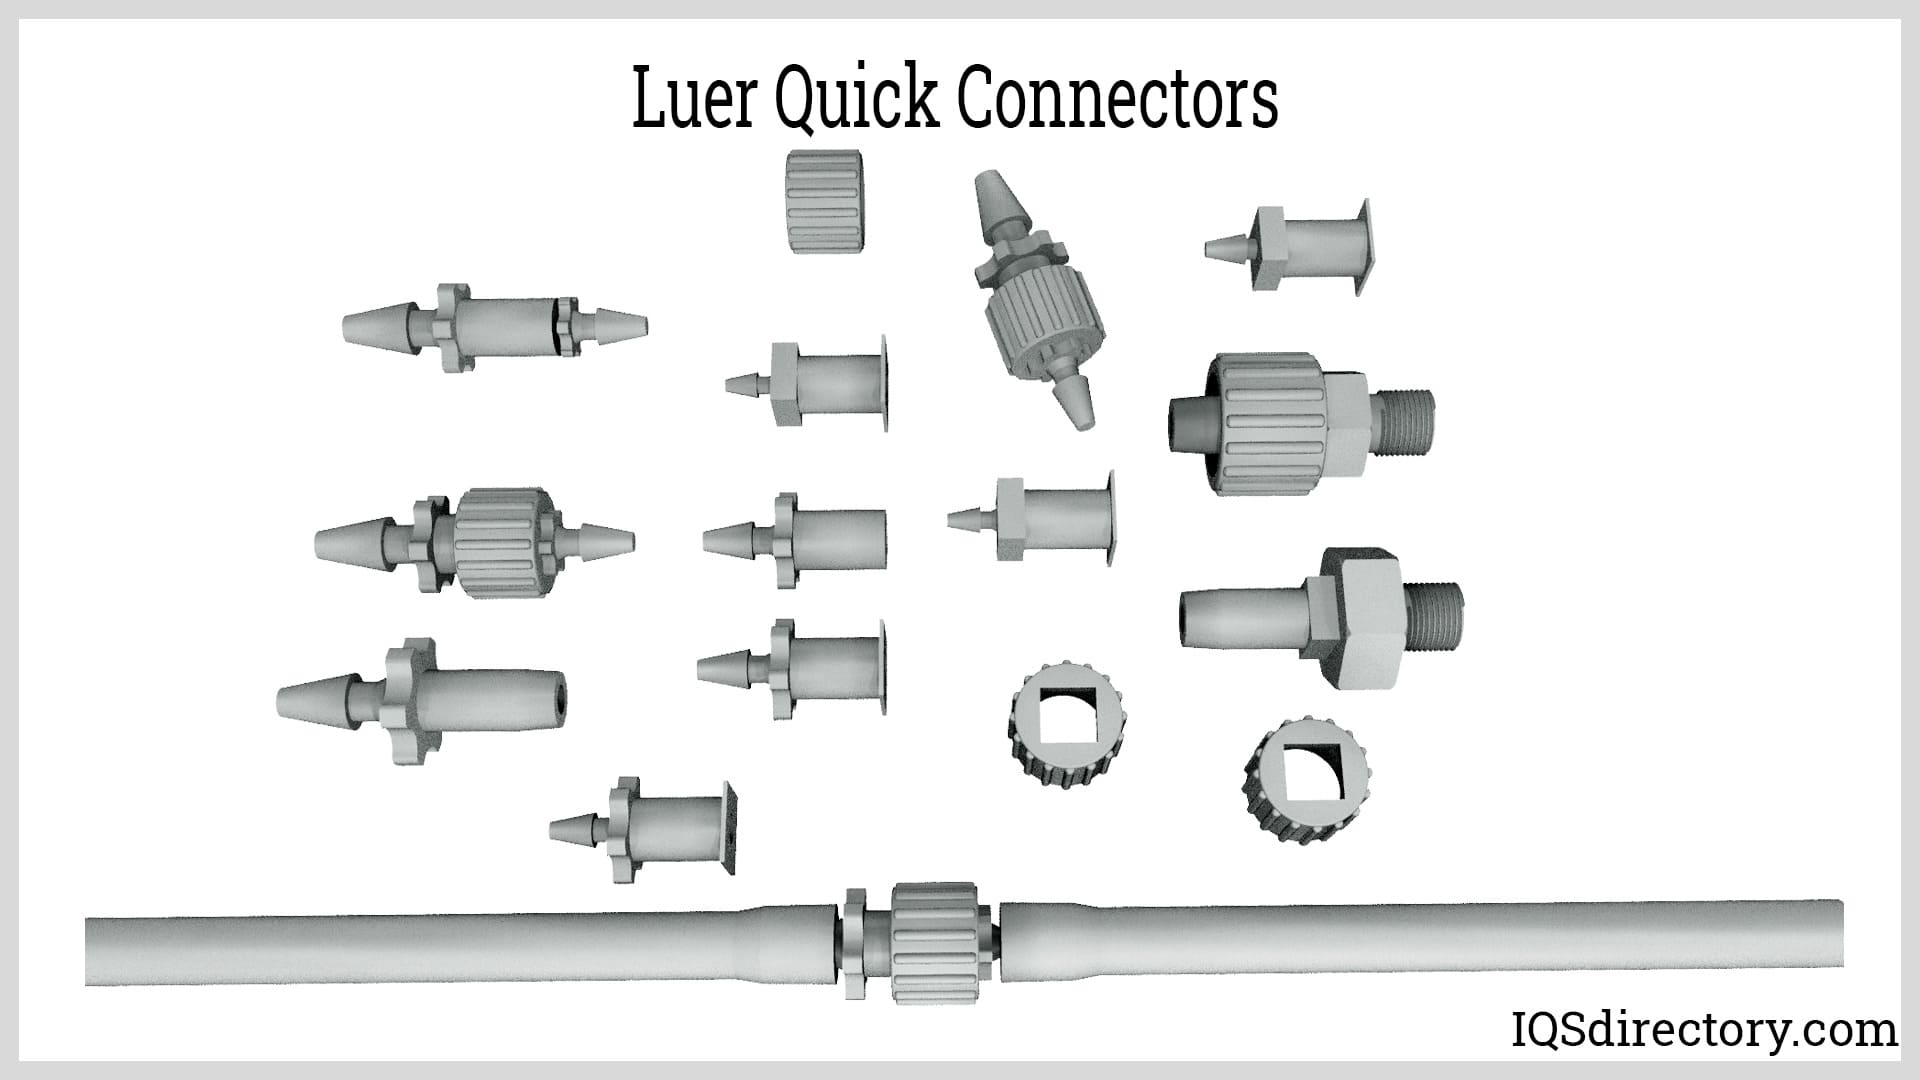 Luer Quick Connectors